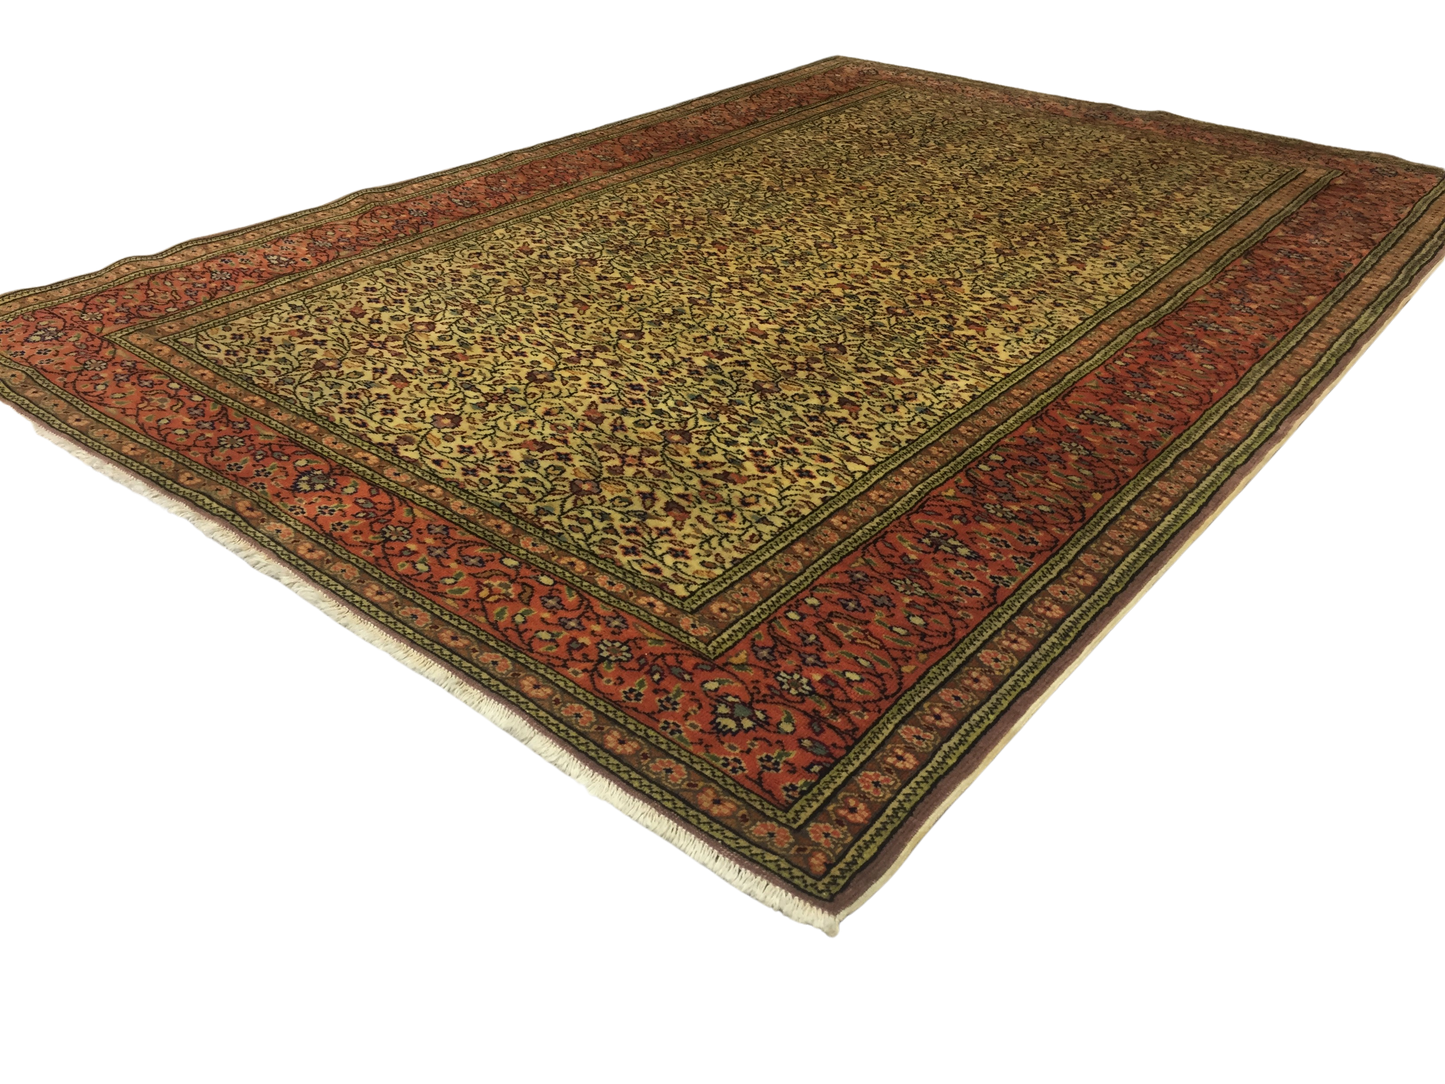 Classic Carpet 152 X 227 cm - Alfombras de Estambul -  Turkish Carpets - Alfombras de Estambul